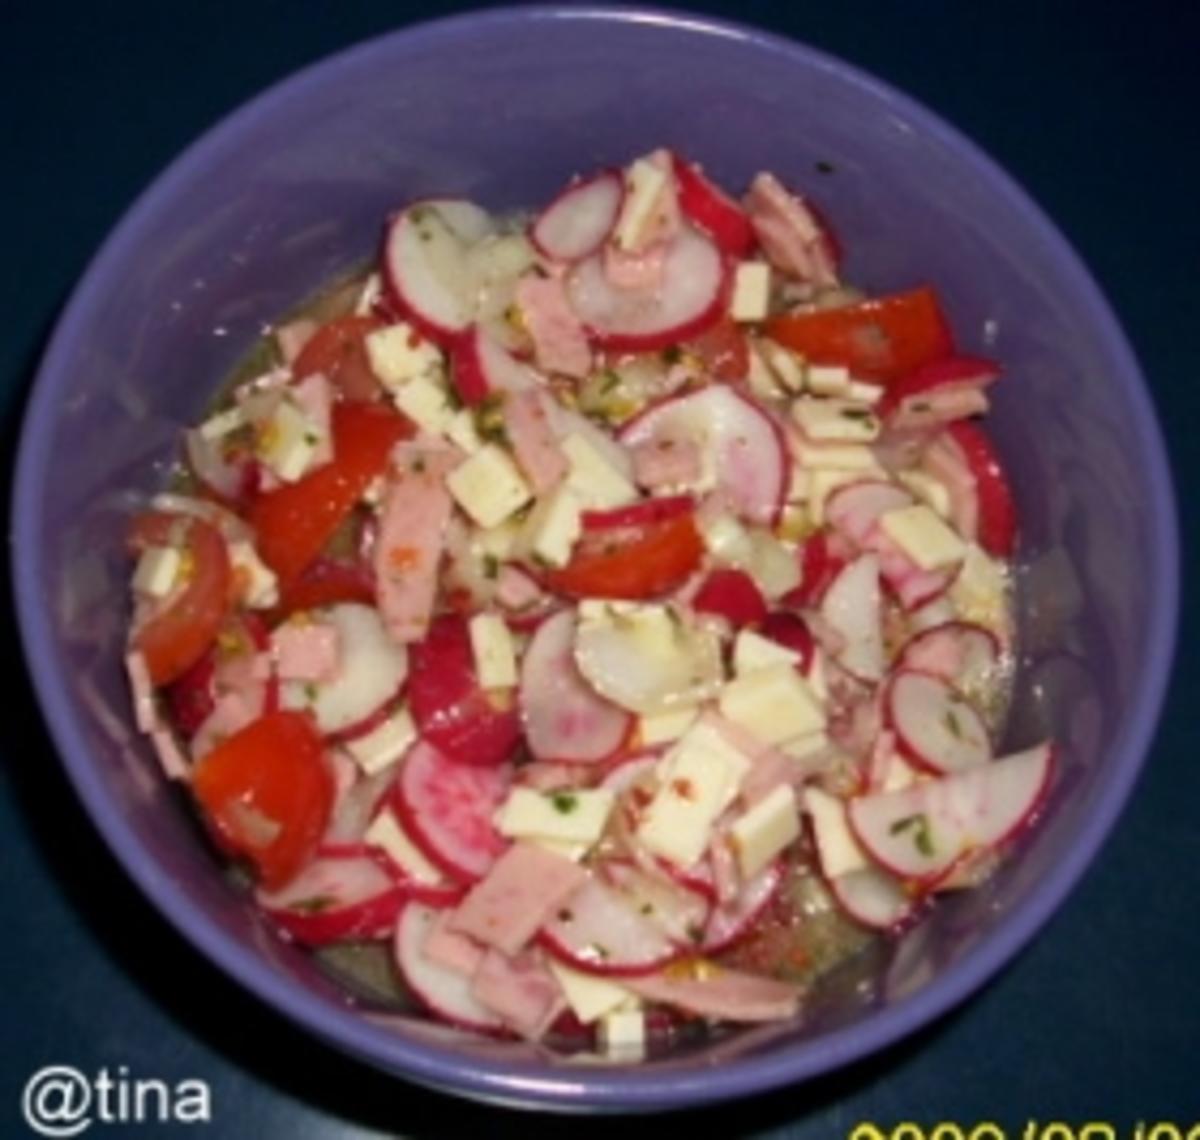 Radieschen - Tomatensalat - Rezept